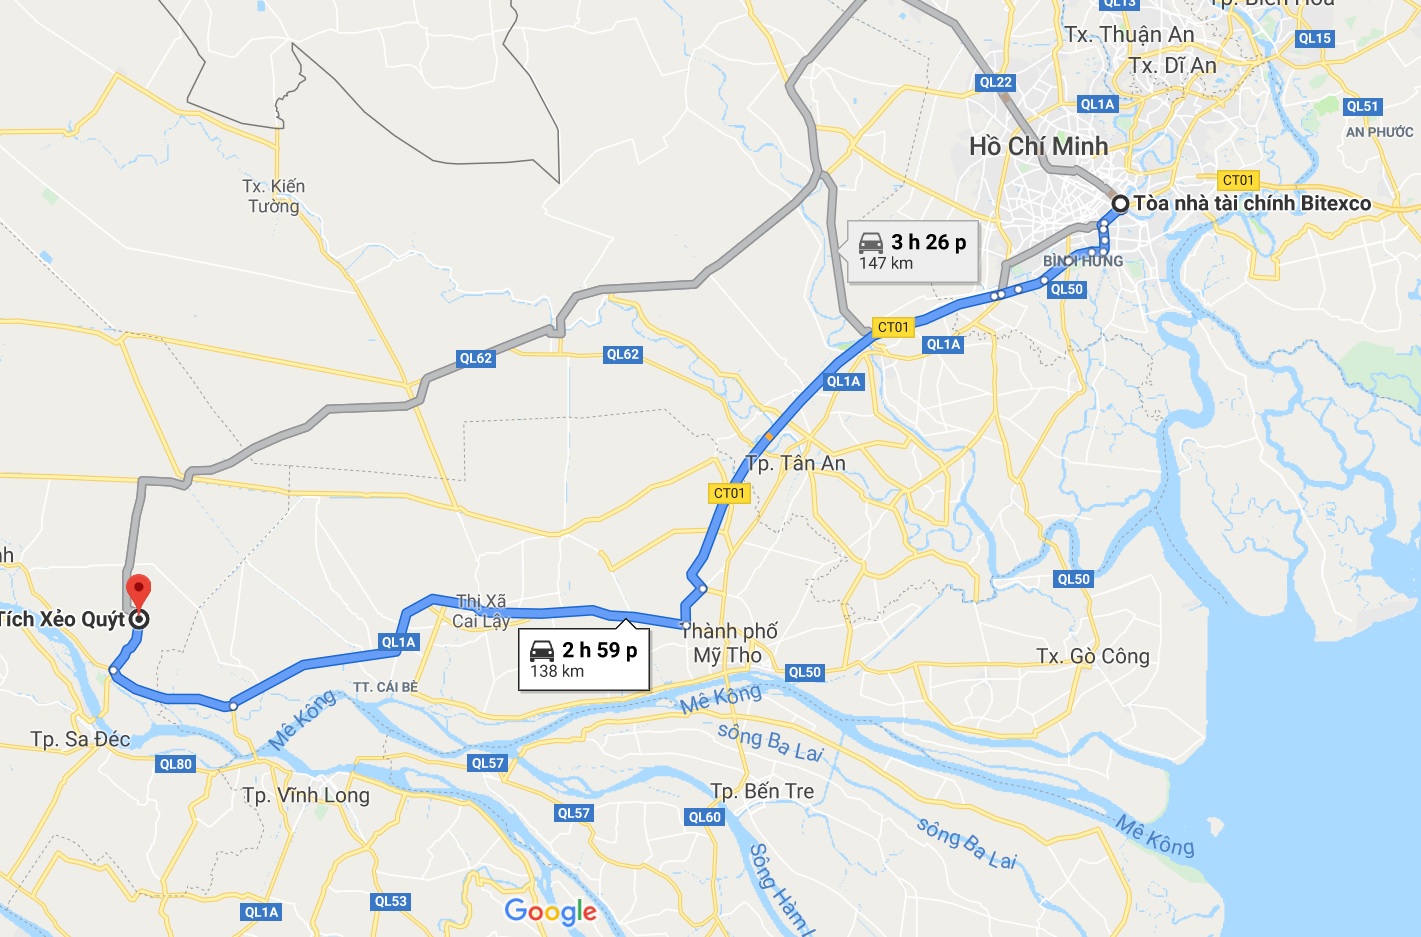 Trung tâm du lịch Xô Quýt cách Thành phố Hồ Chí Minh khoảng 138km